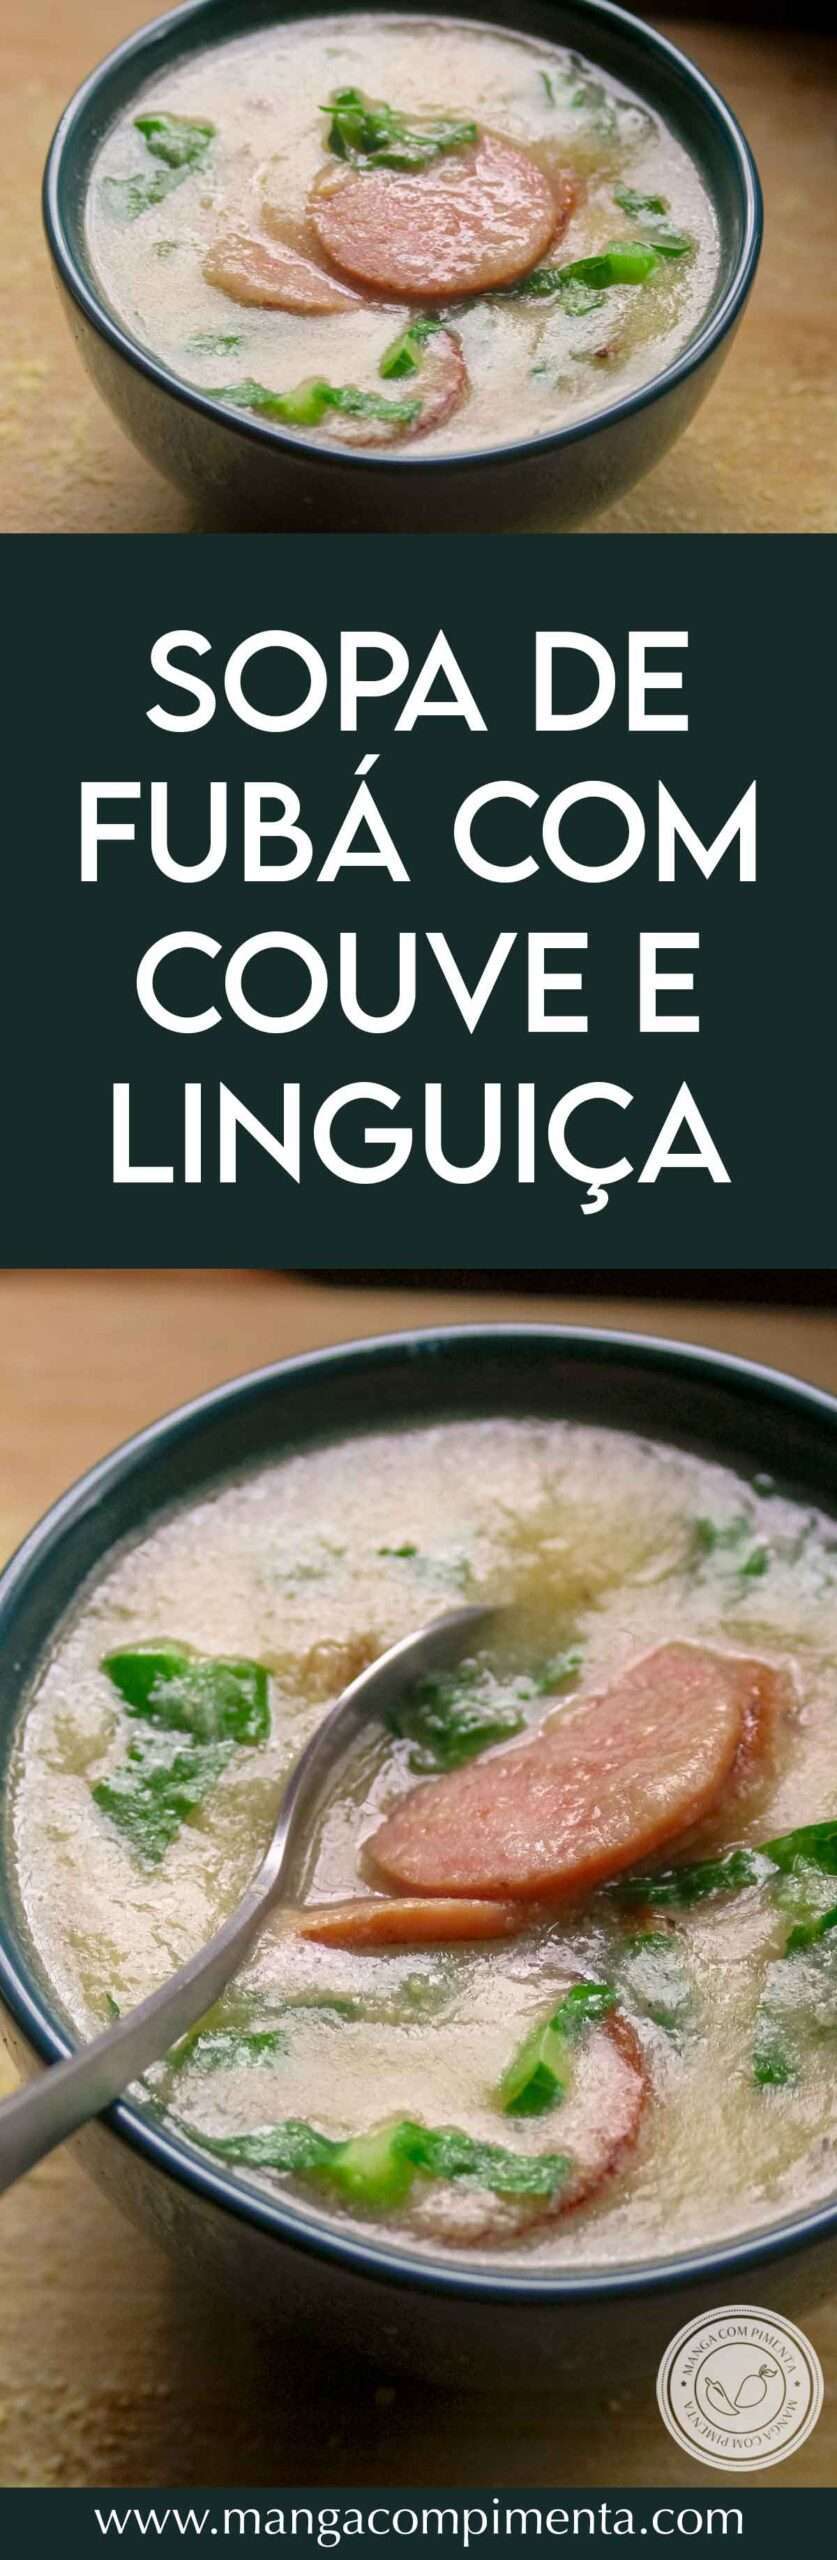 Receita de Sopa de Fubá com Couve e Linguiça Calabresa - um prato delicioso para aqueles dias frios de inverno!